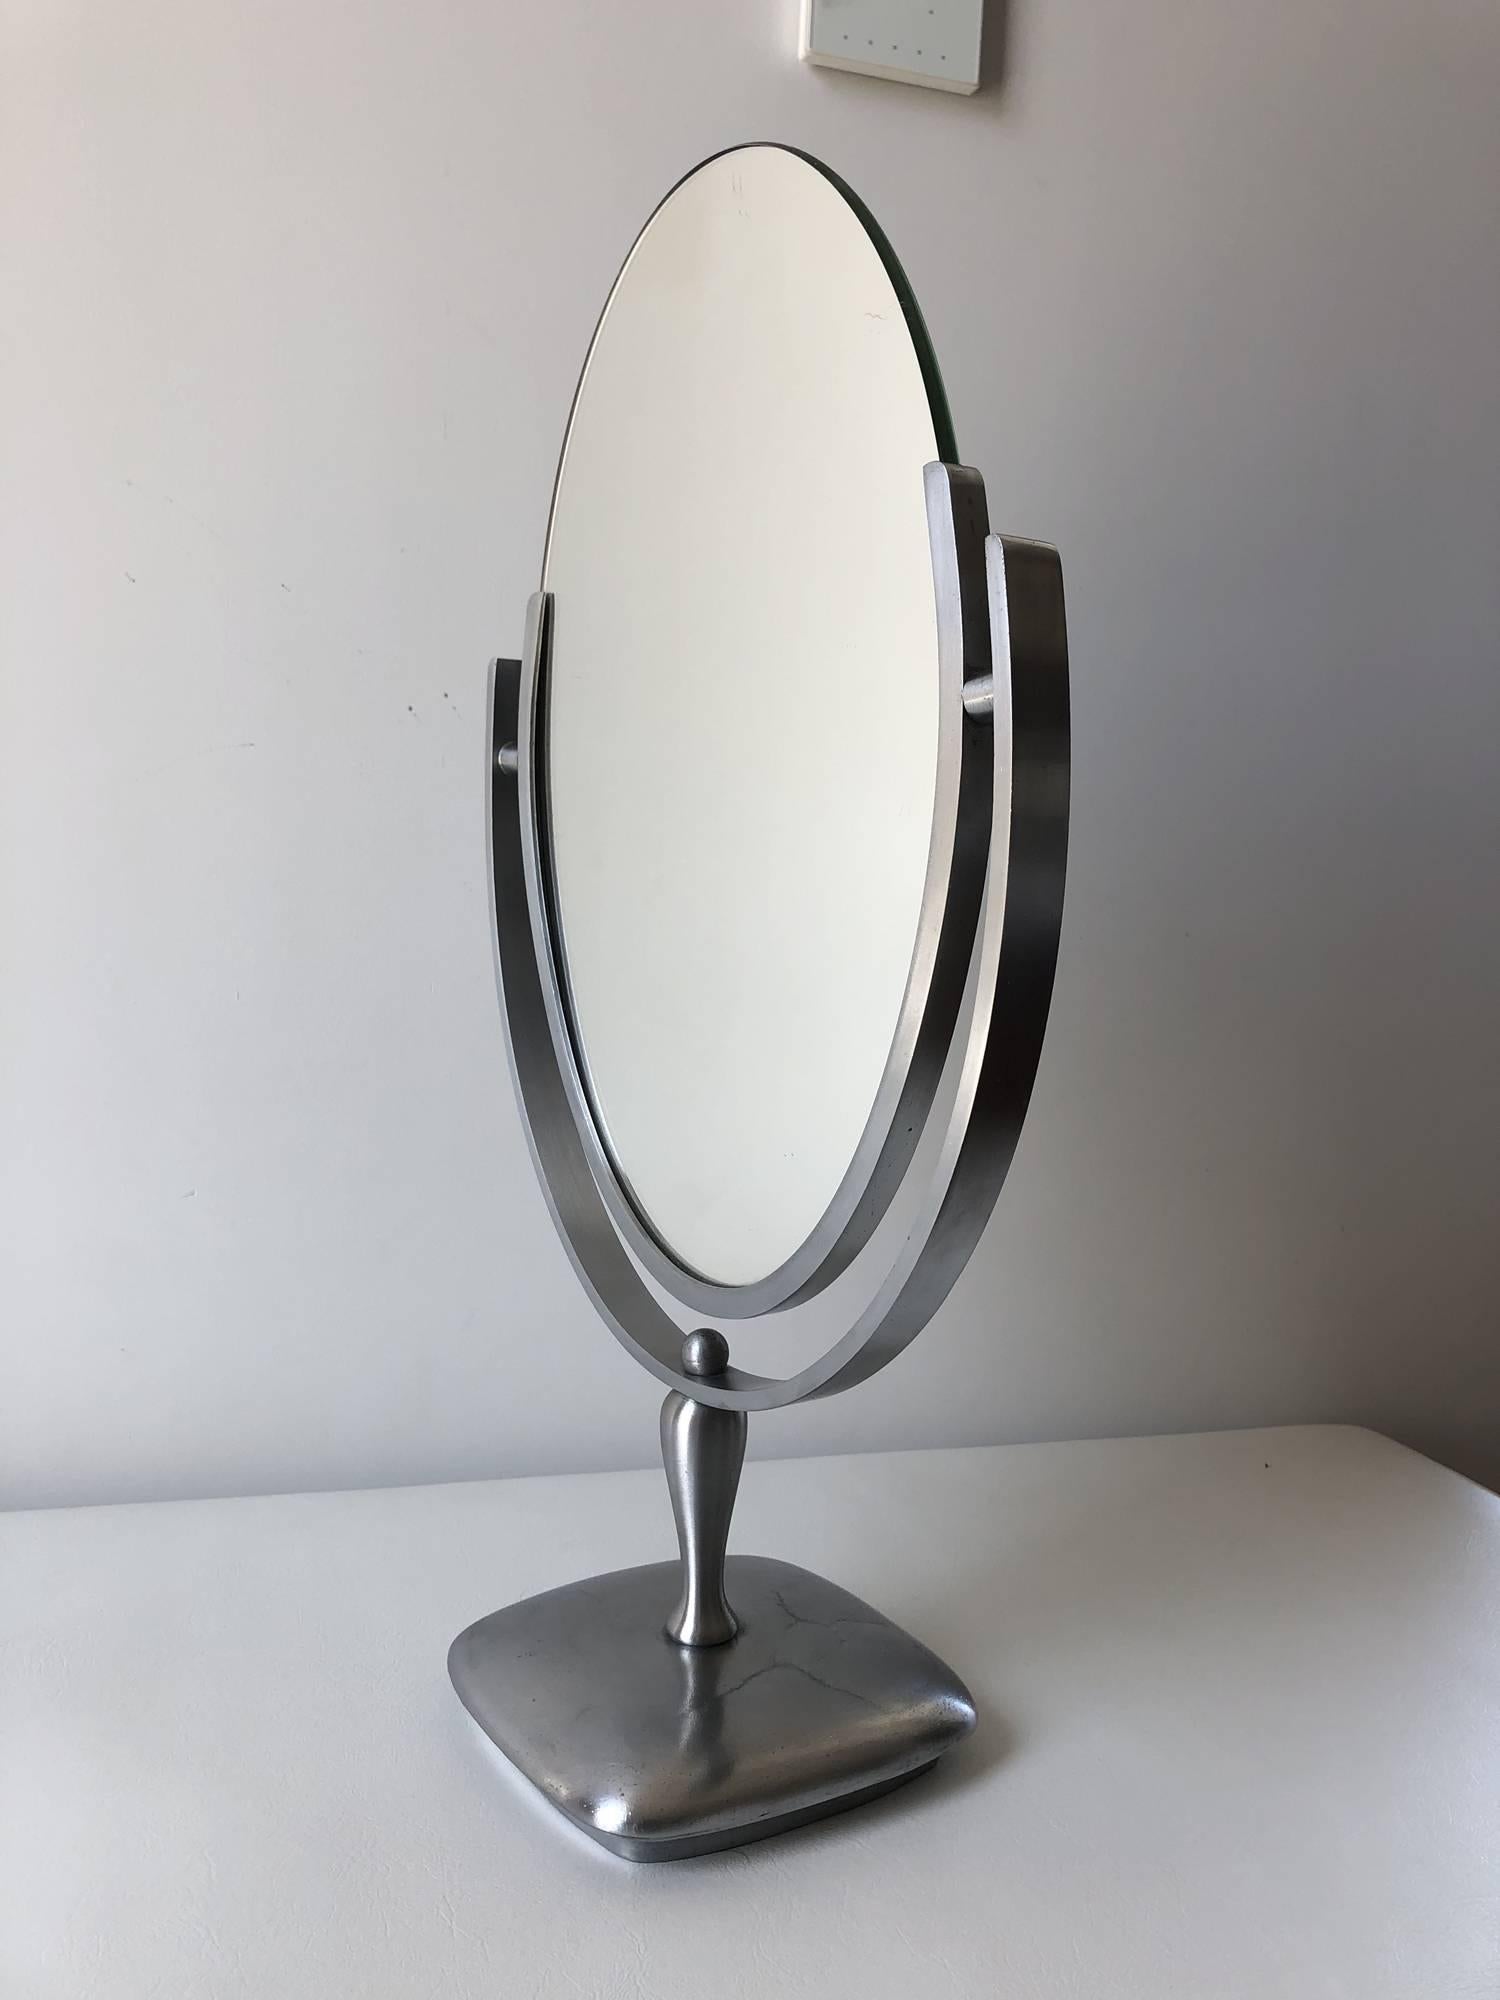 Schöner ovaler Spiegel, entworfen und hergestellt von Charles Hollis Jones in den 1960er Jahren. Der Spiegel hat einen satinierten Metallrahmen und Sockel, der Spiegel hat eine abgeschrägte Oberfläche und ist in ausgezeichnetem Zustand.

Das Werk